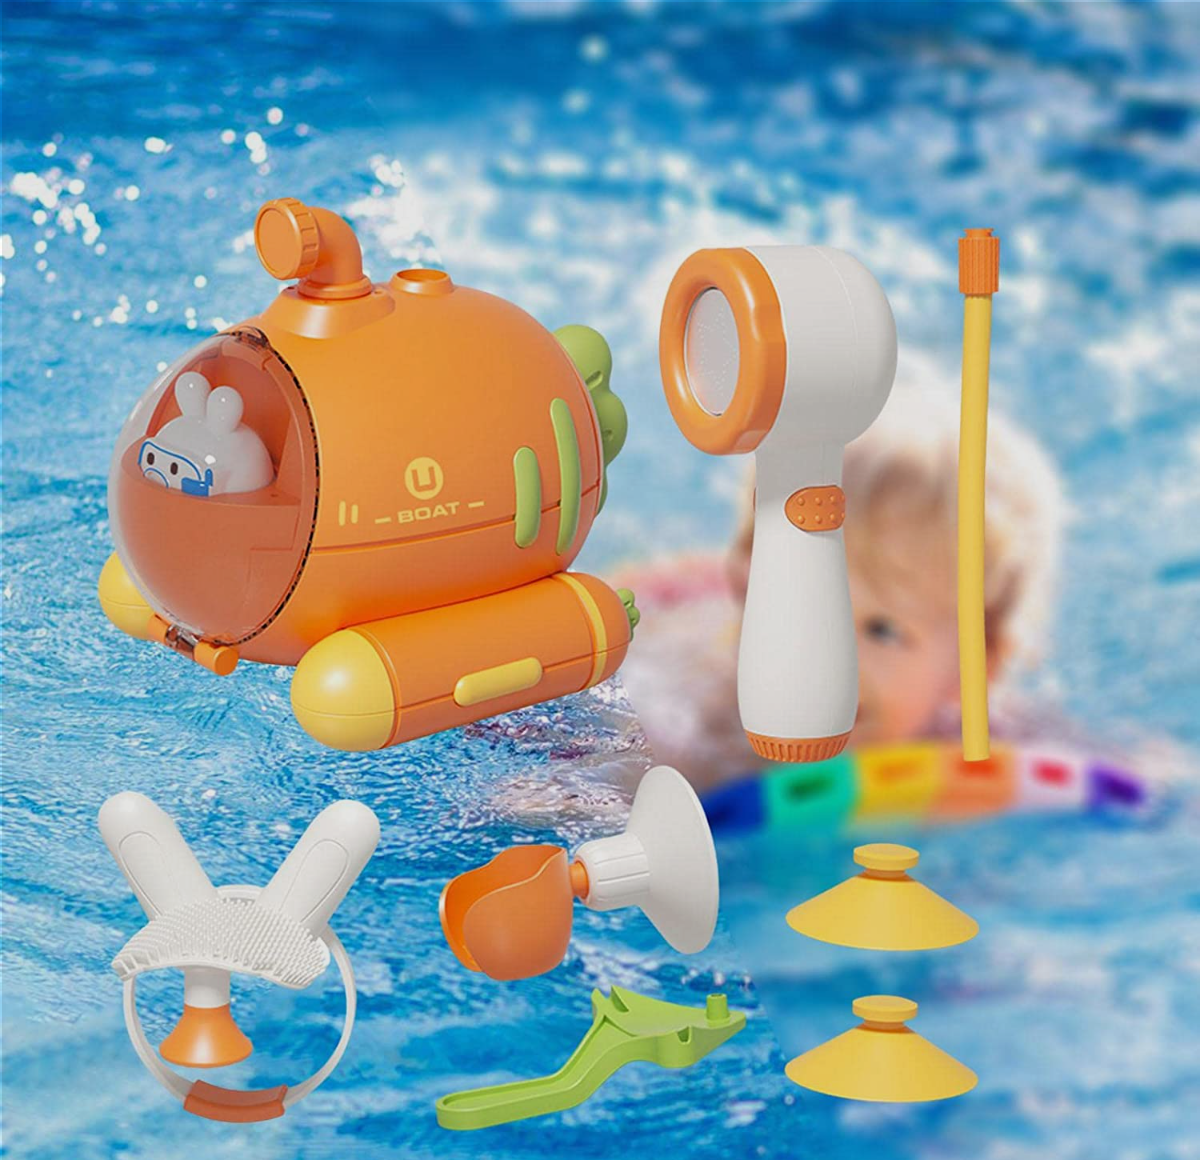 『人気お風呂おもちゃ』お風呂 おもちゃ ニンジン潜水艦｜壁に落ちずにしっかりと吸着できる吸盤付き·超強い防水·柔軟シリコンブラシ·シャワーヘッド